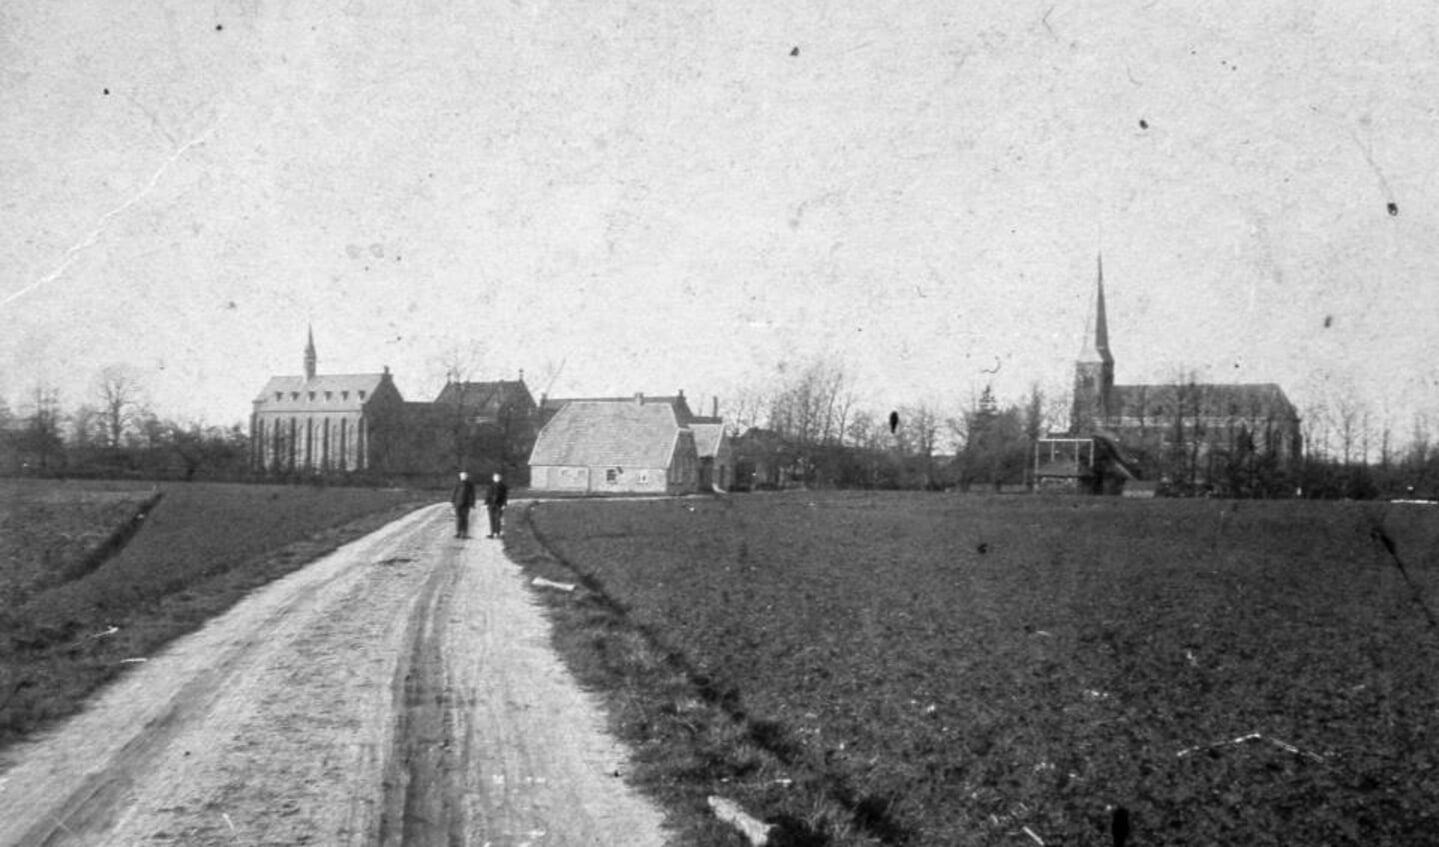 Kerkstraat in Harreveld 1930. Foto: archief OVH